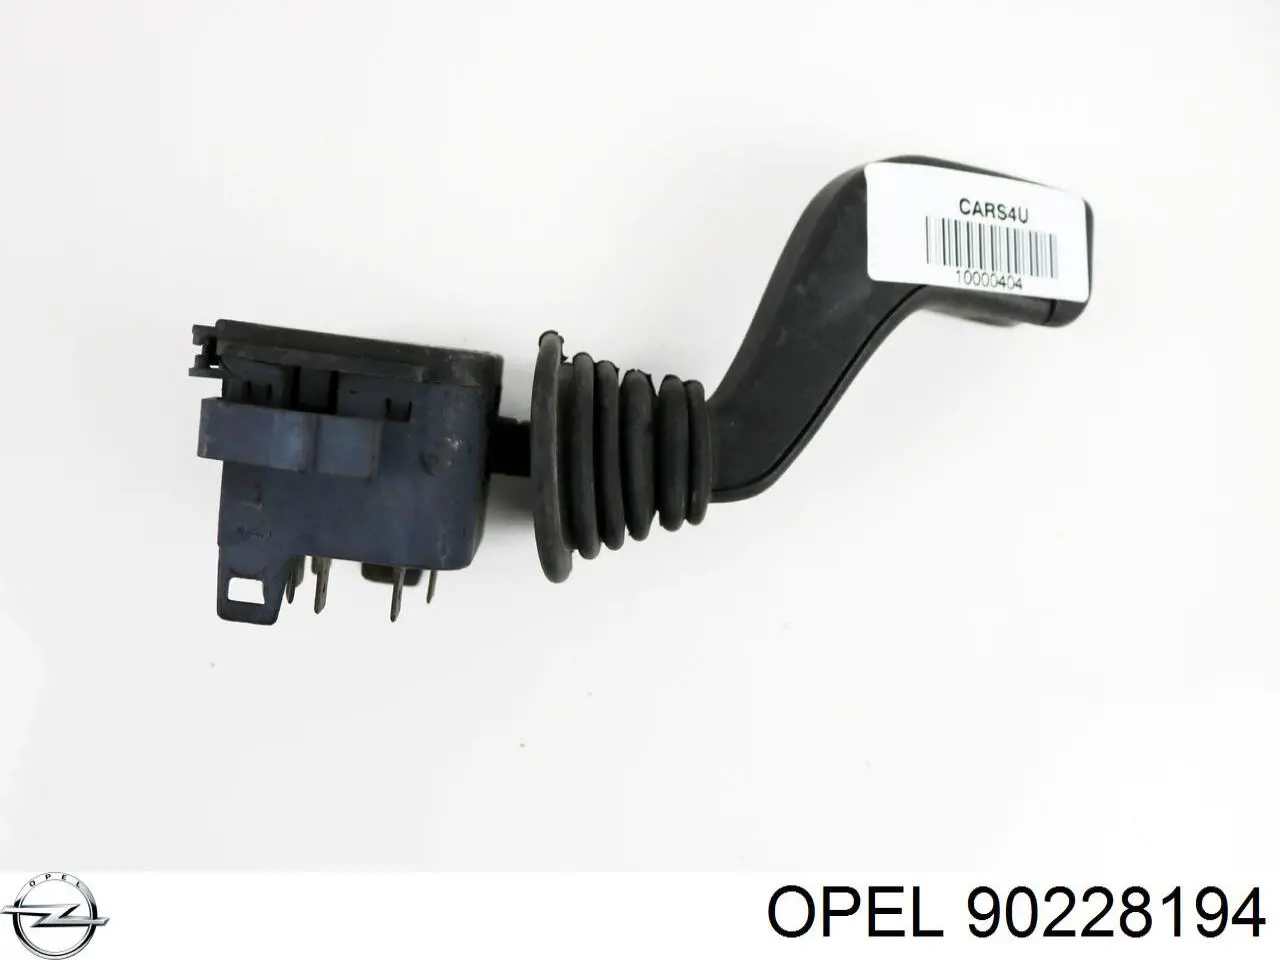 90228194 Opel comutador esquerdo instalado na coluna da direção